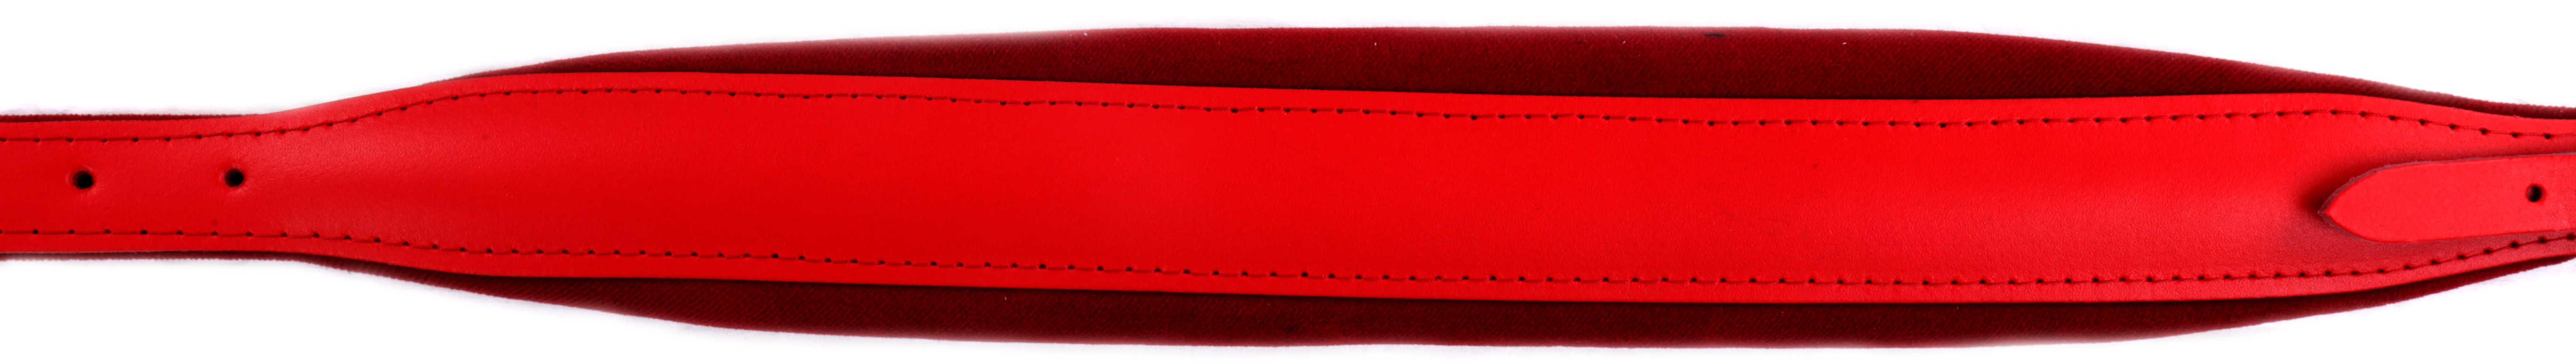 Akkordeon Trageriemen  Rindleder rot Rindleder und Samtpolster rot 7,5 cm Breit.